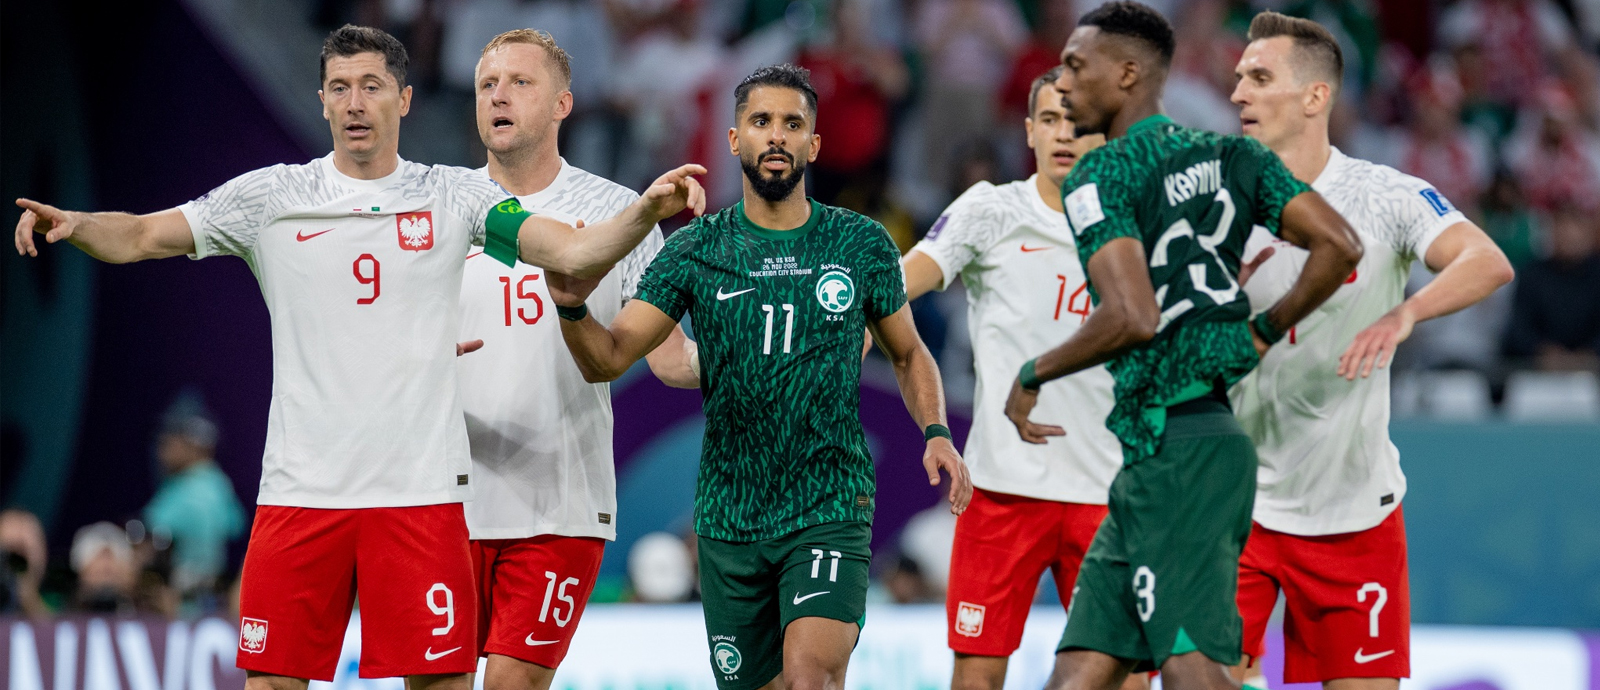 المنتخب السعودي يخسر أمام نظيره البولندي بهدفين دون مقابل